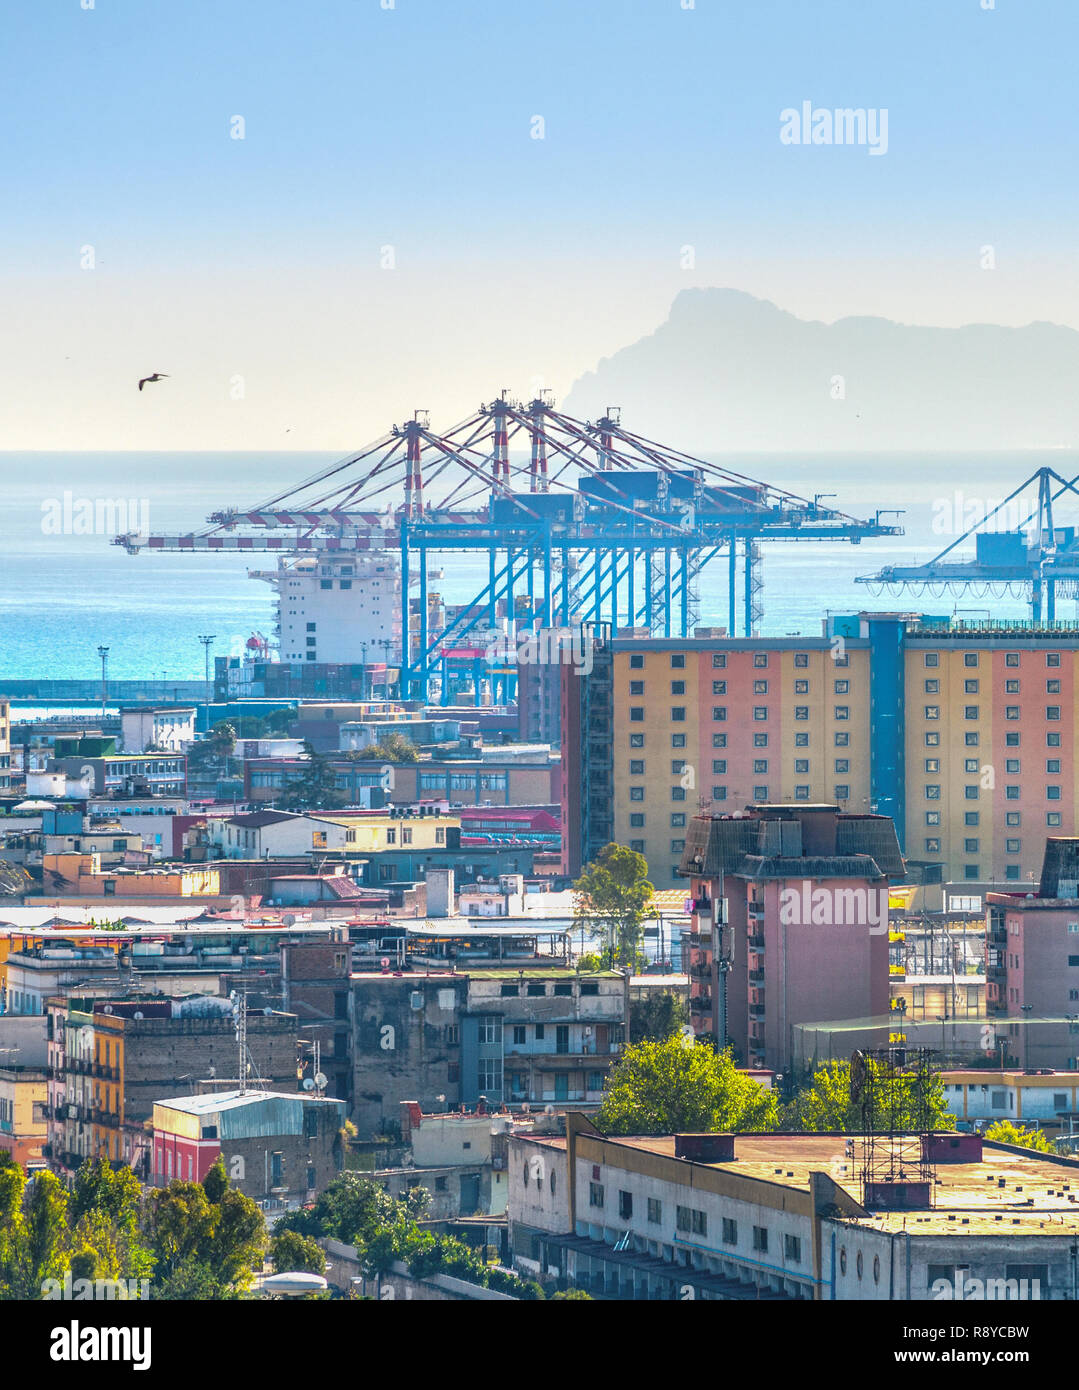 Paesaggio urbano dell'antenna con il quartiere portuale, gru di merci nel porto di seascape con vista isola sullo sfondo, Napoli, Italia Foto Stock